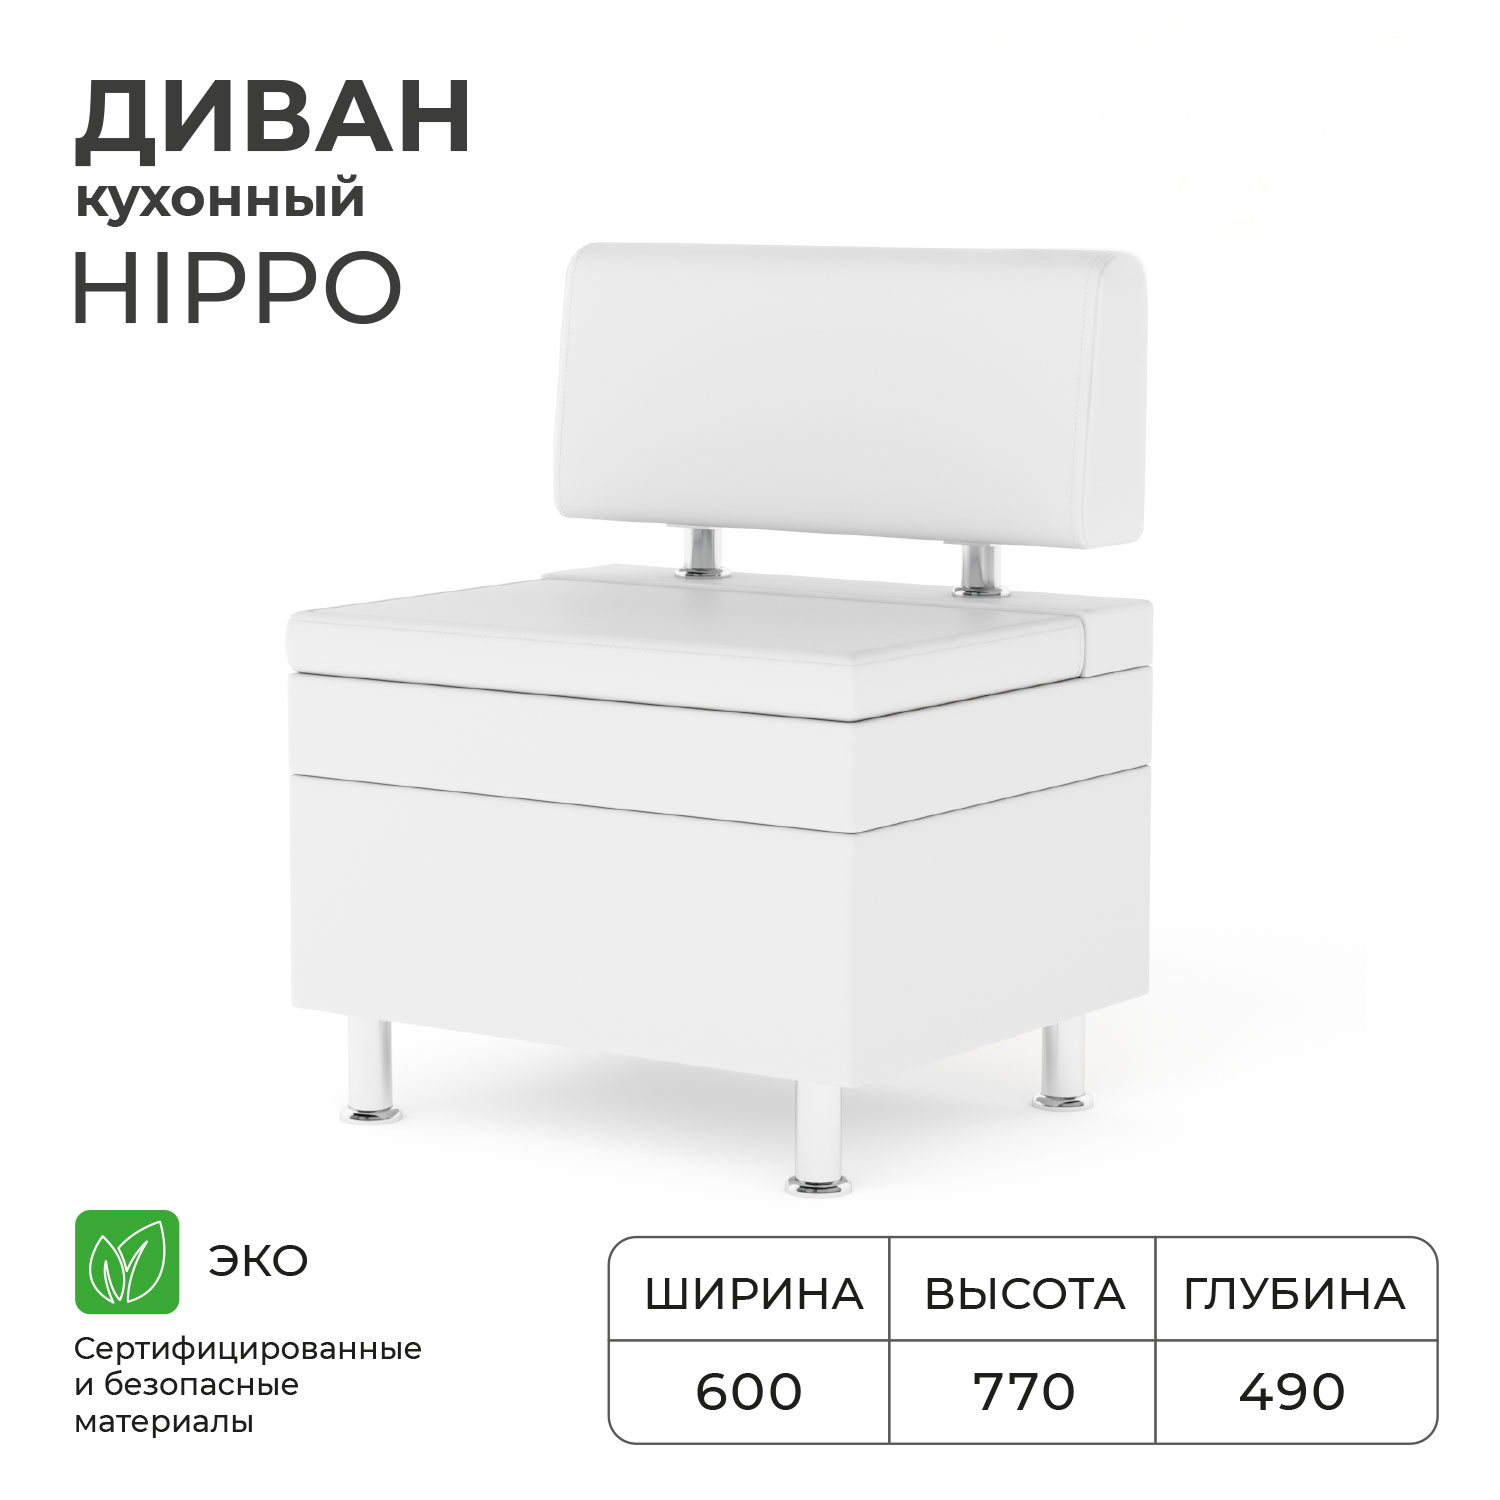 Диван кухонный НОРТА Hippo 600х490х770